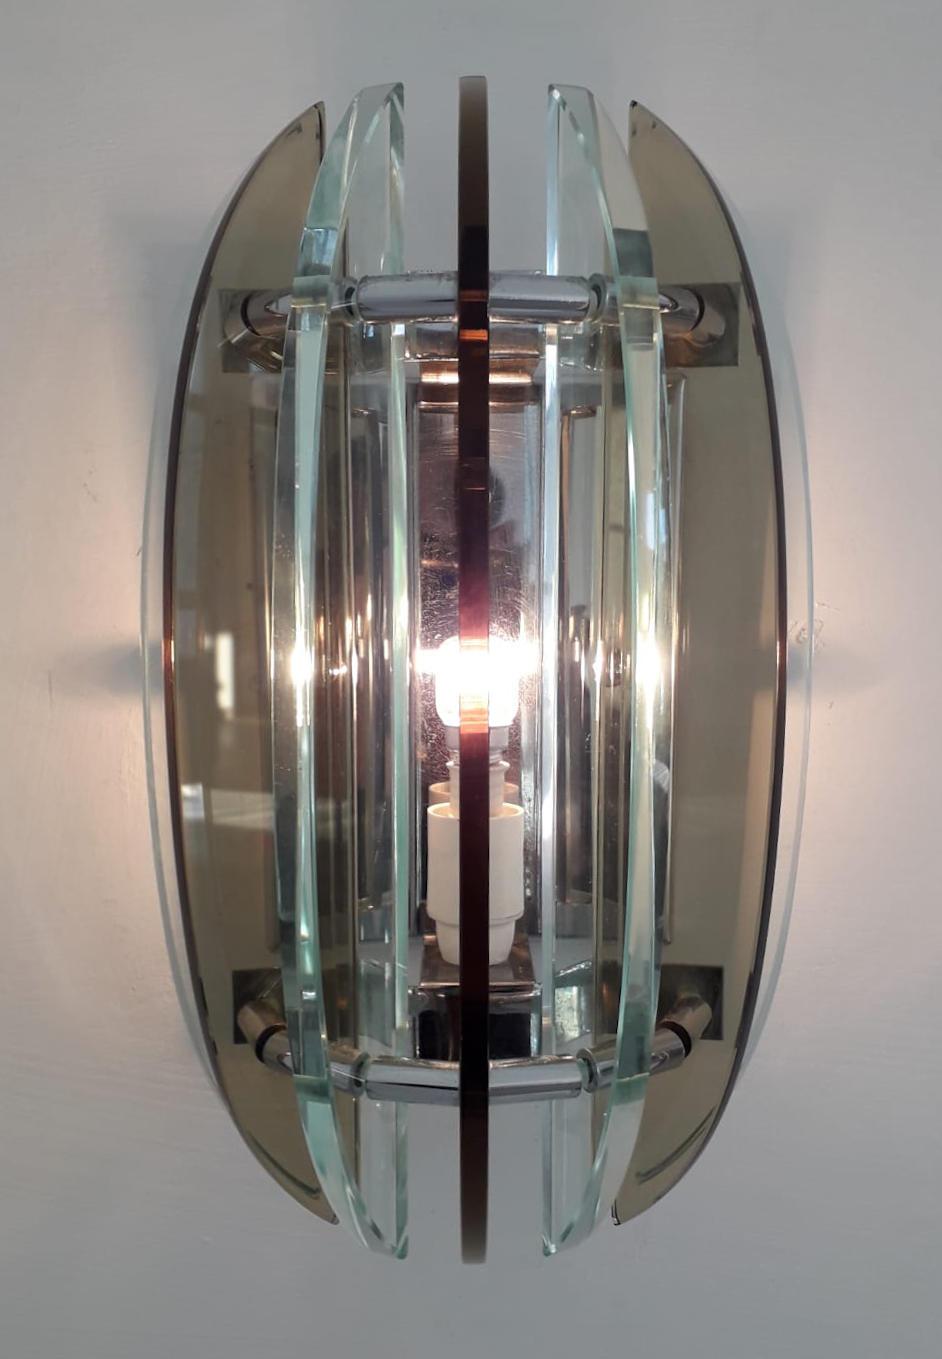 Paar italienische Wandleuchten mit klarem und rauchbraunem, abgeschrägtem Glas auf Nickelrahmen / Made in Italy by Veca, ca. 1960er Jahre.
1 Leuchte / Typ E12 oder E14/ max. 40W
Maße: Höhe 11 Zoll, Breite 7 Zoll, Tiefe 5 Zoll
Bestellnummer: FABIOLTD